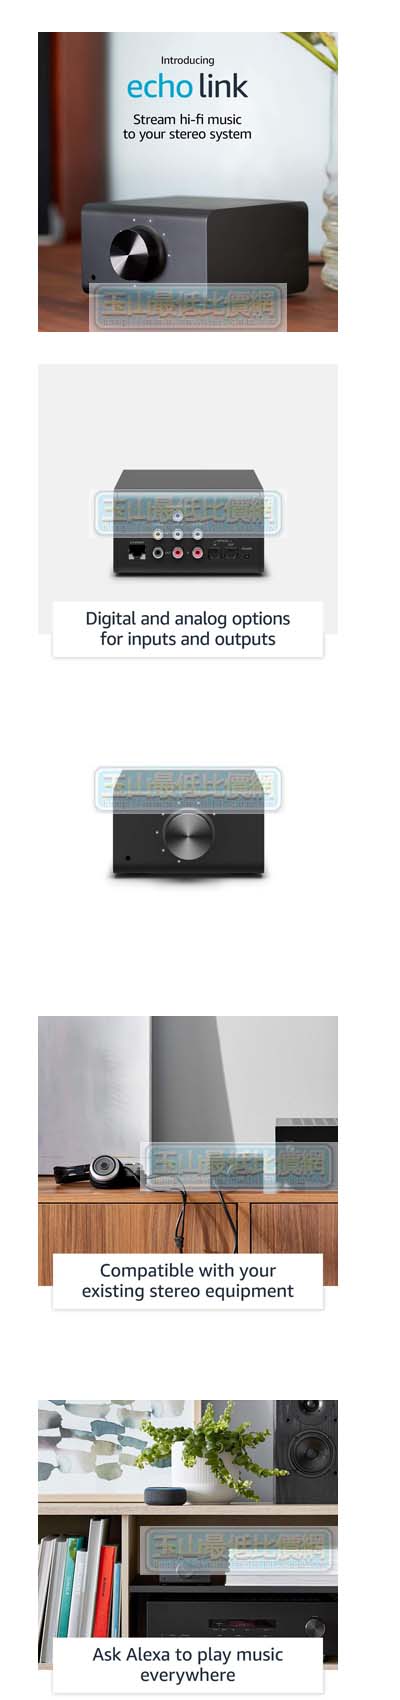 7美國直購] Amazon Echo Link - Stream hi-fi music to your stereo 